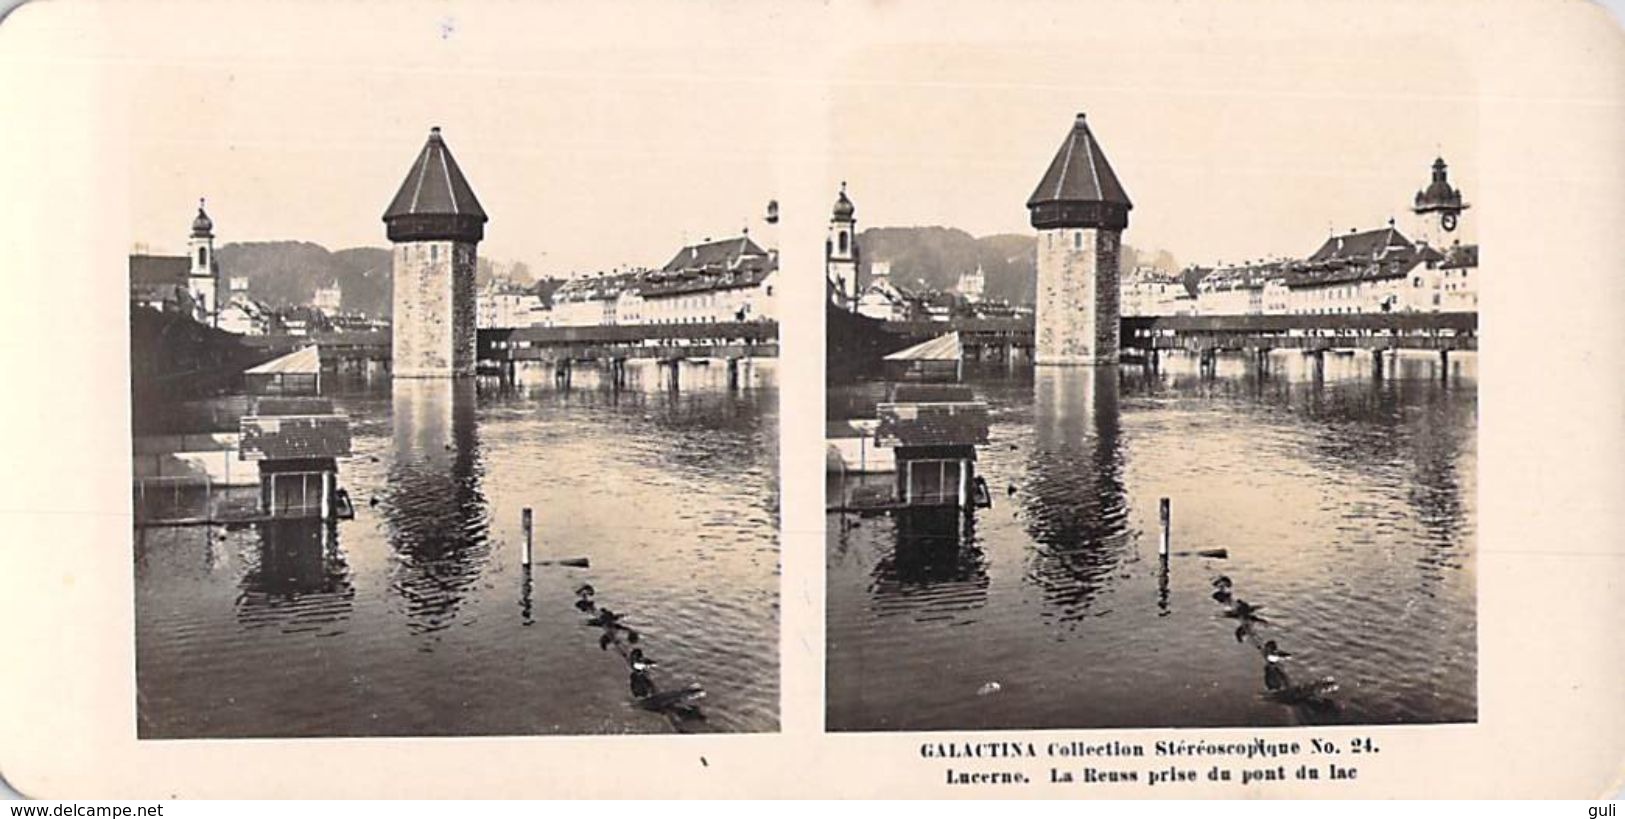 collection Stéréoscopique LOT de 5 photos stéréoscopiques GALACTINA n°21-20-23-24-22/ LUCERNE Suisse/ NPG 1906